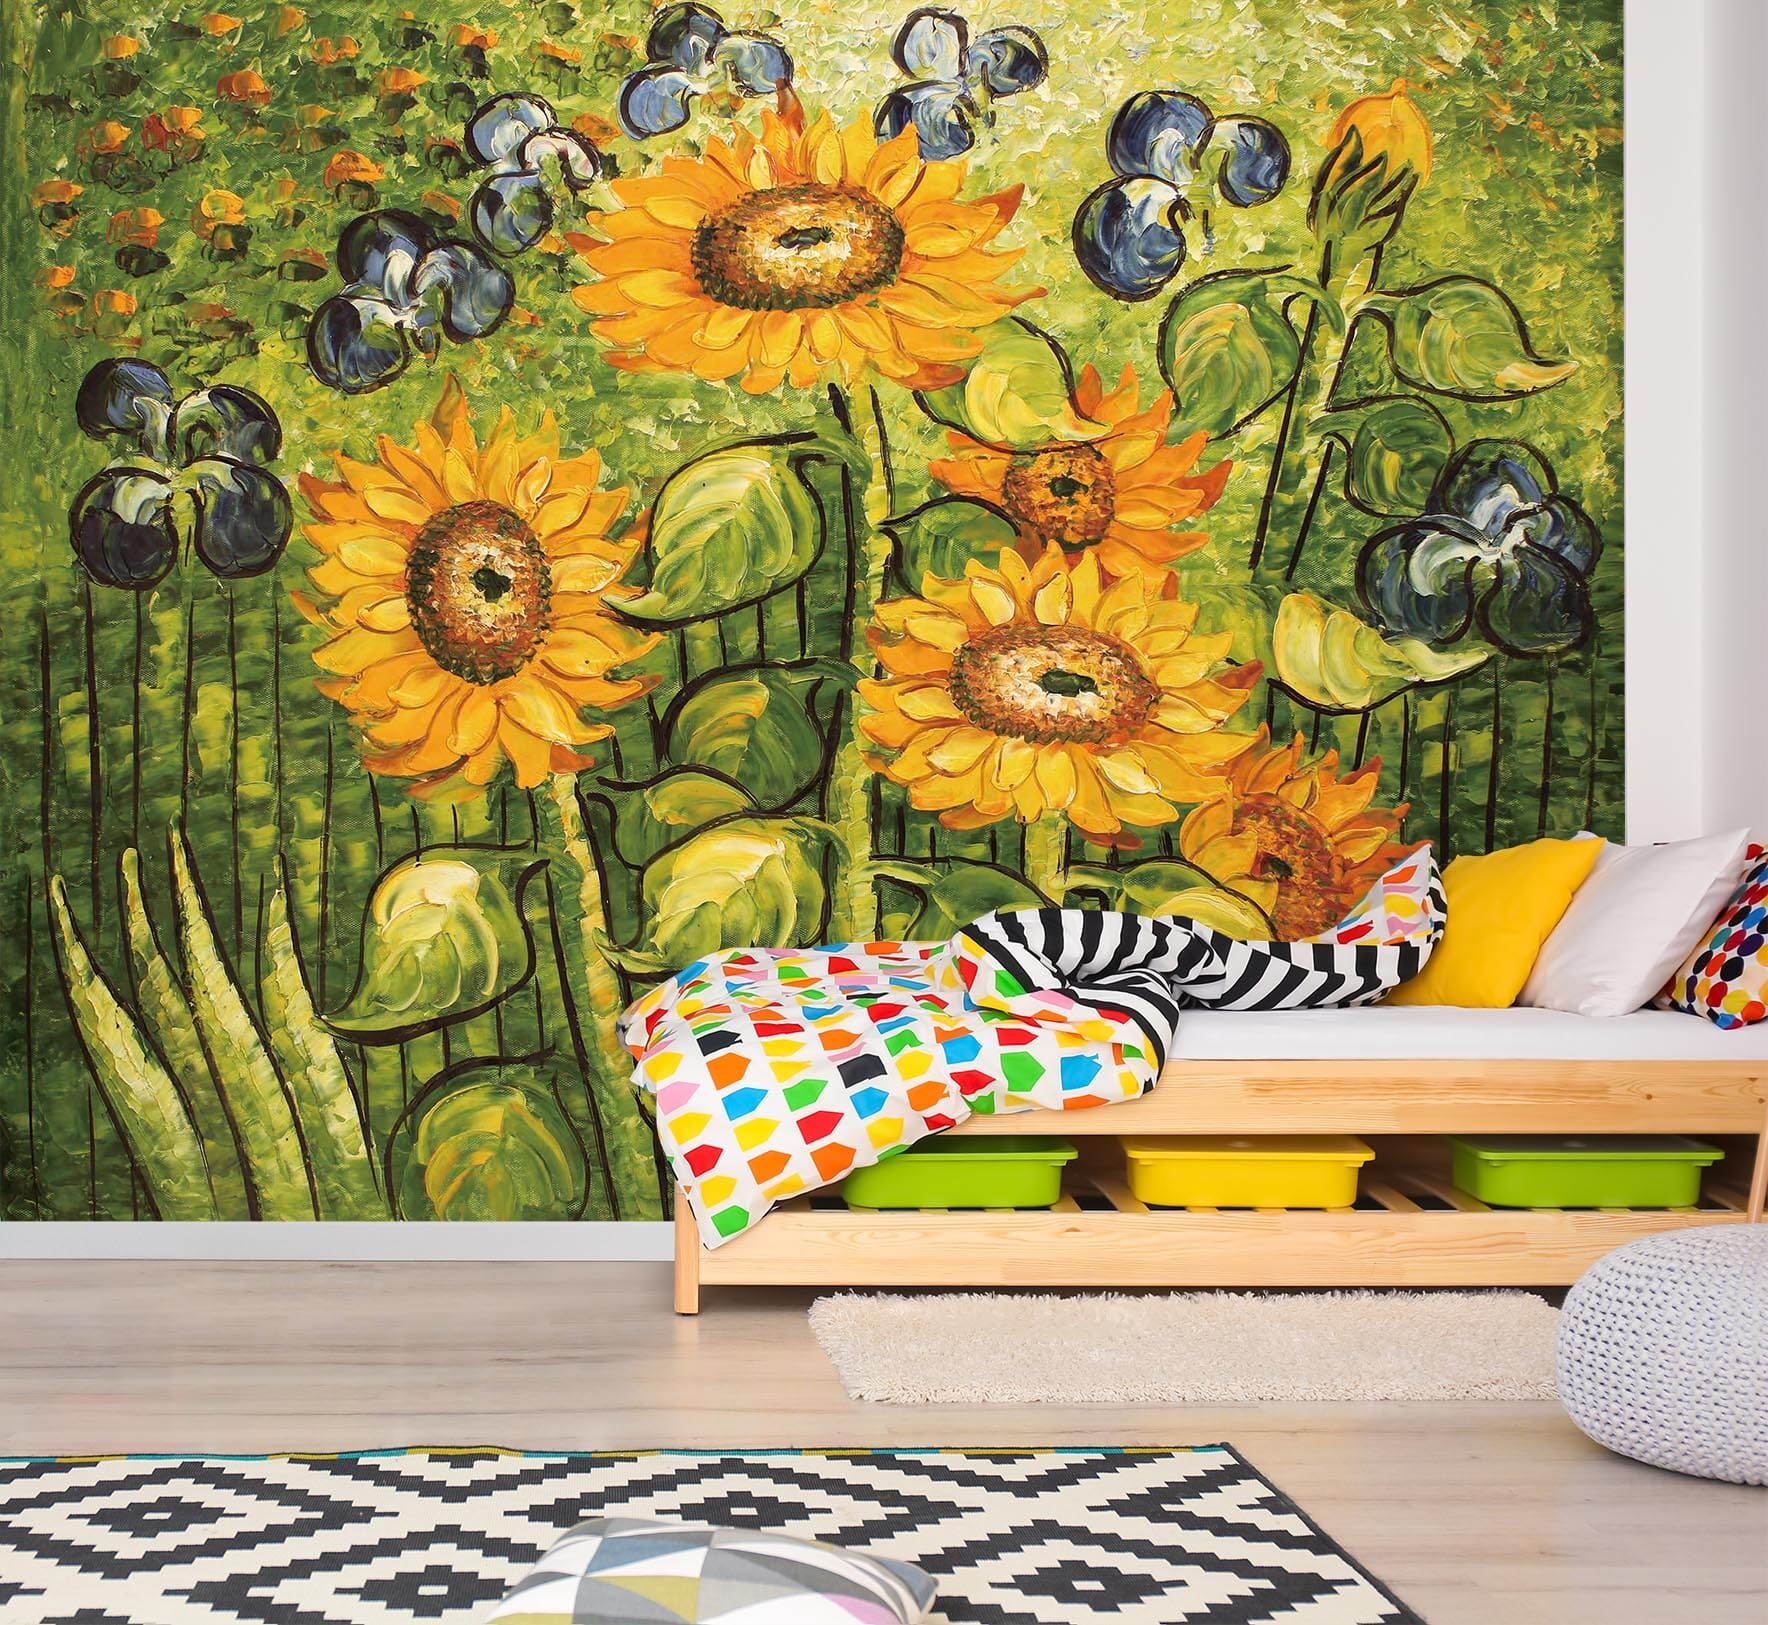 3D Sunflower Oil Painting 019 Wall Murals Wallpaper AJ Wallpaper 2 